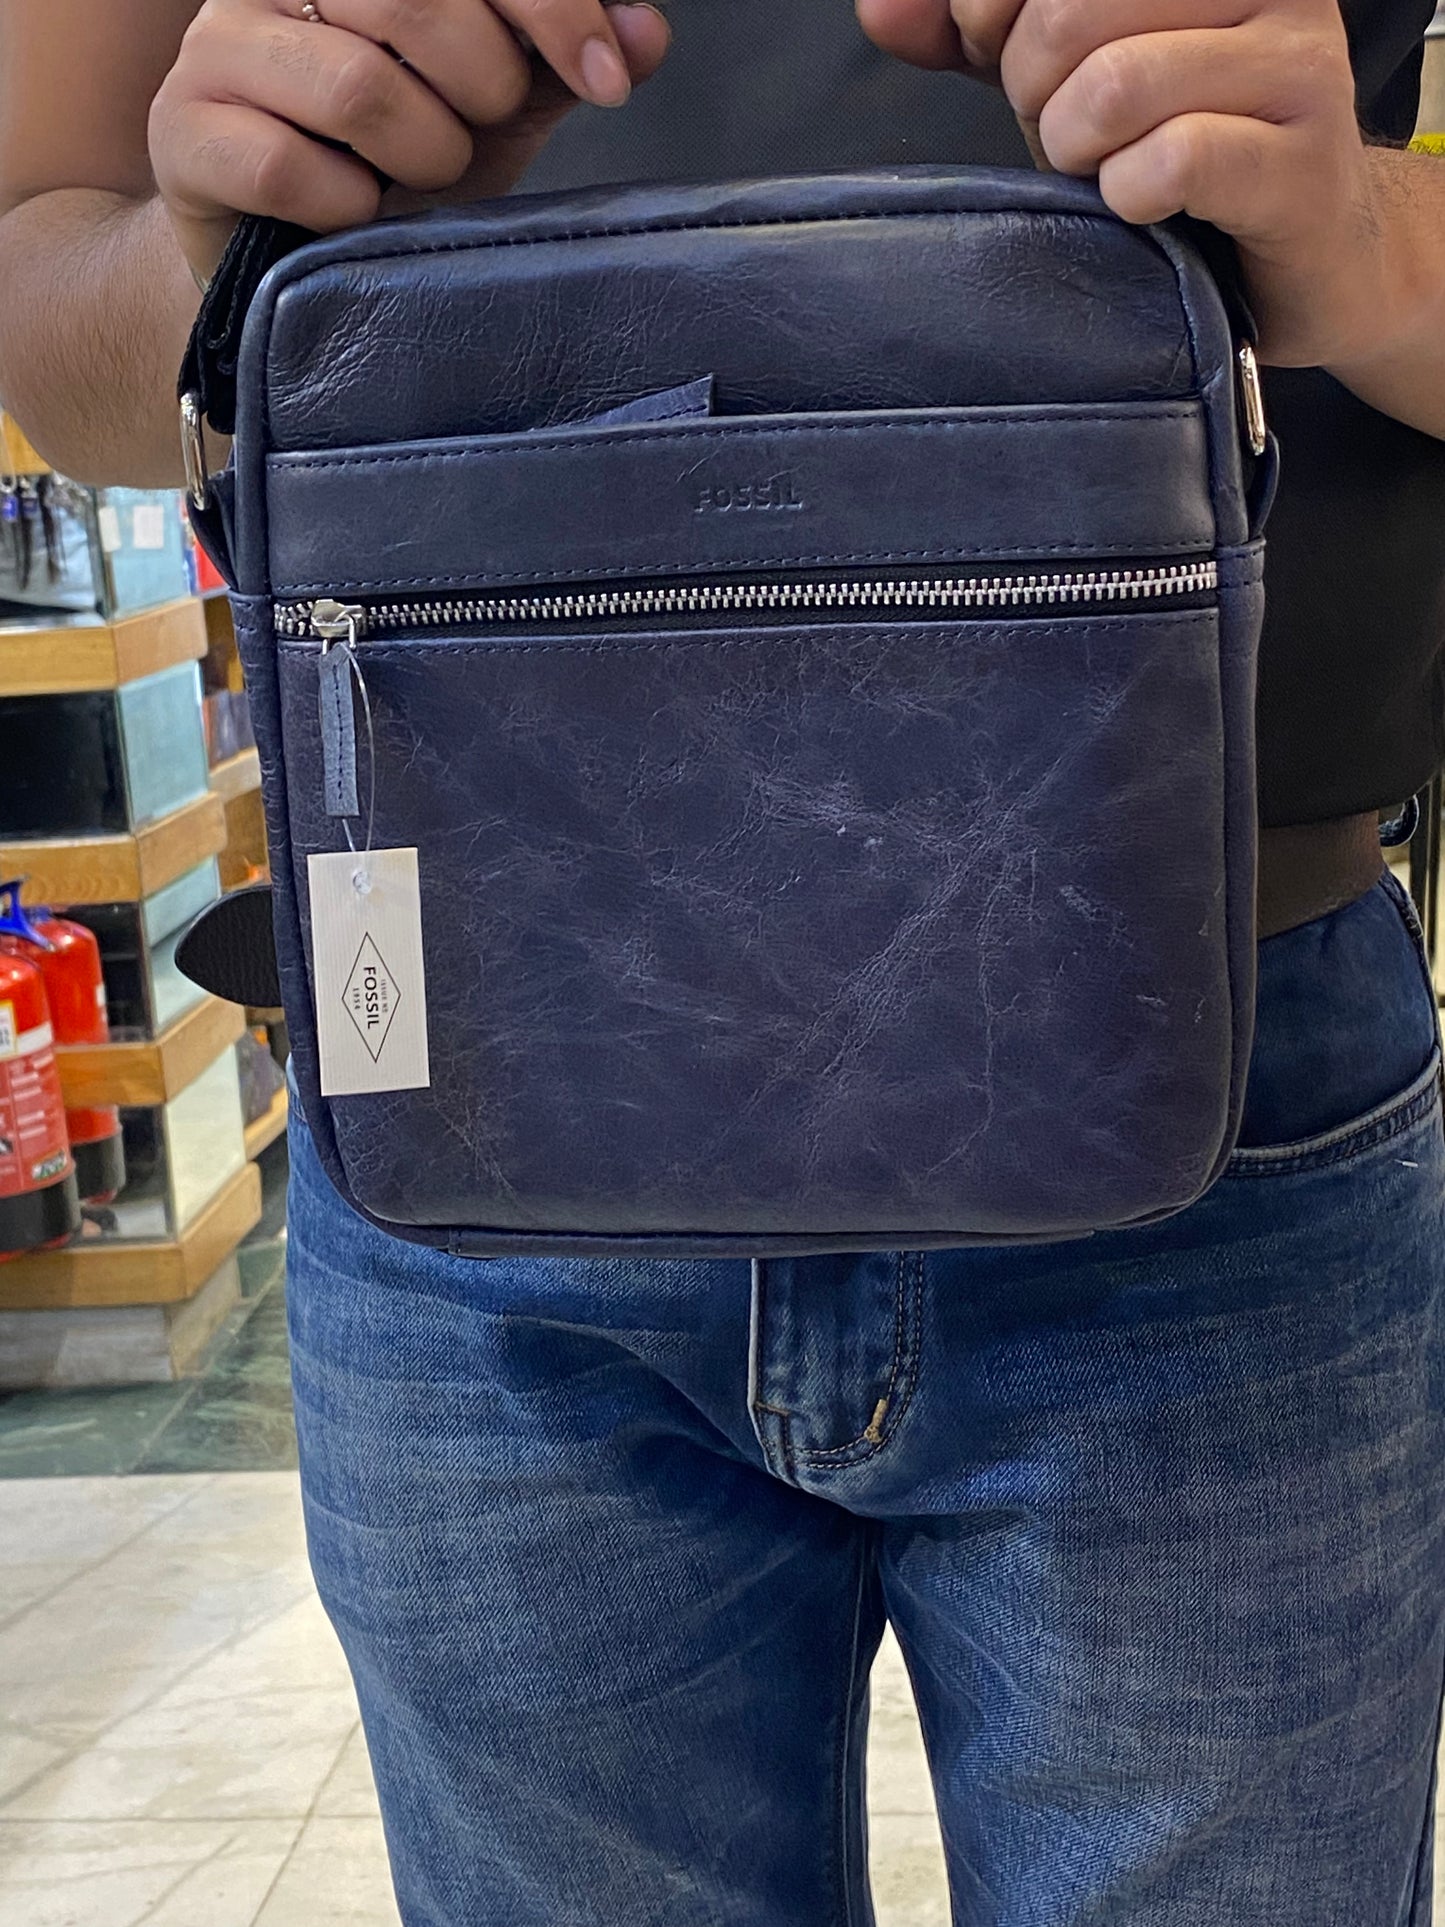 SOF FOS Unisex Genuine Leather Side Sling Messenger Bag 987541